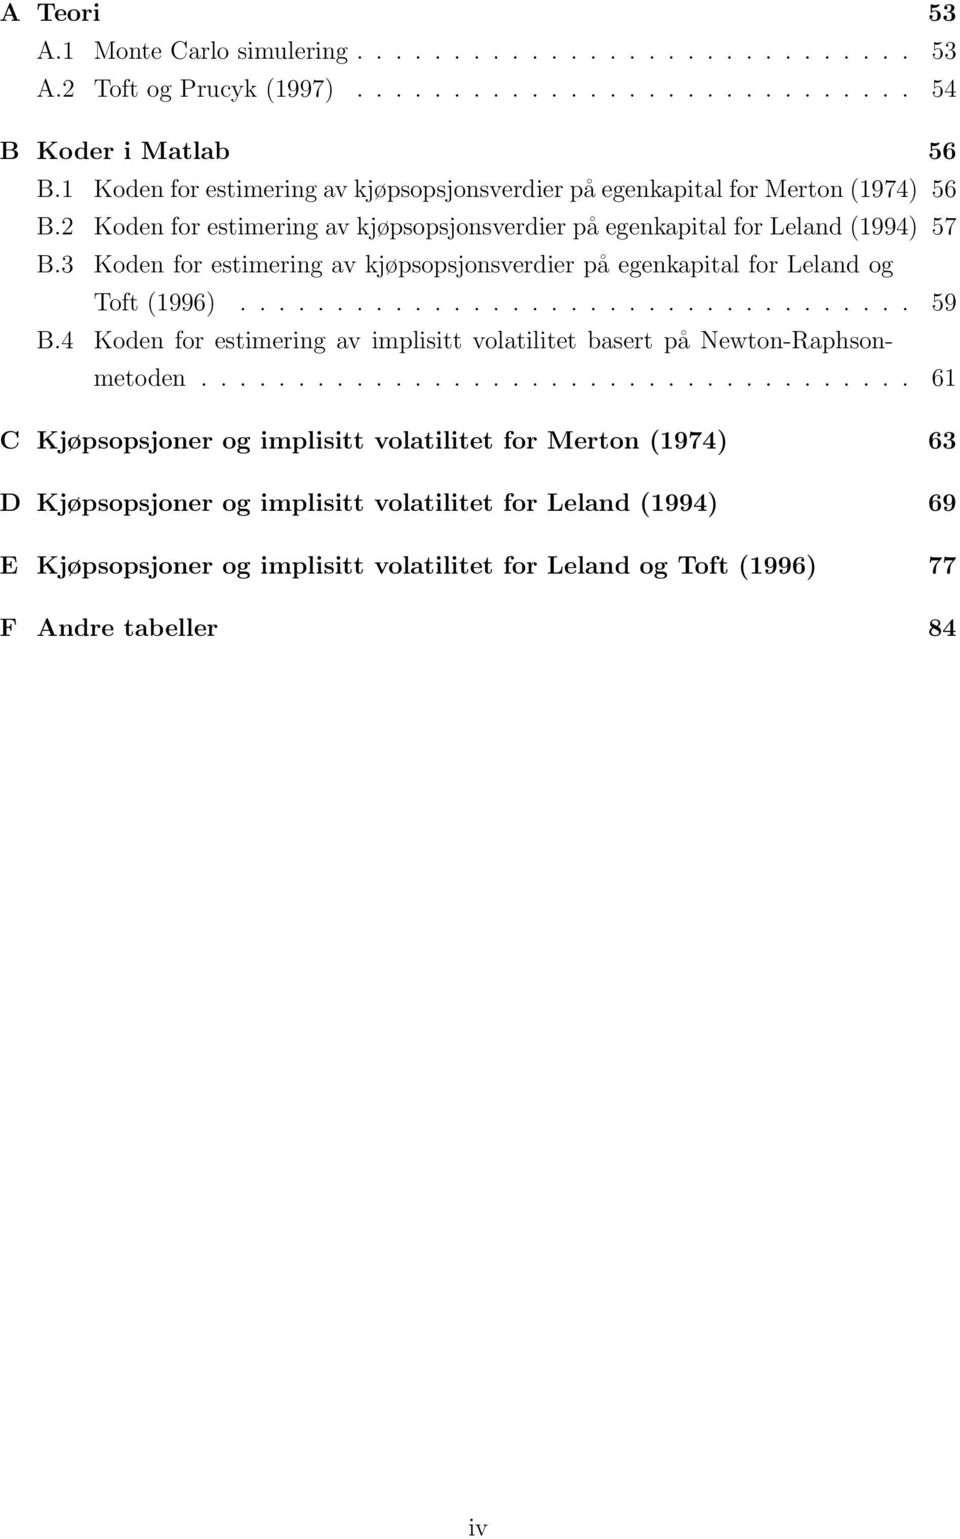 3 Koden for estimering av kjøpsopsjonsverdier på egenkapital for Leland og Toft (1996)................................... 59 B.